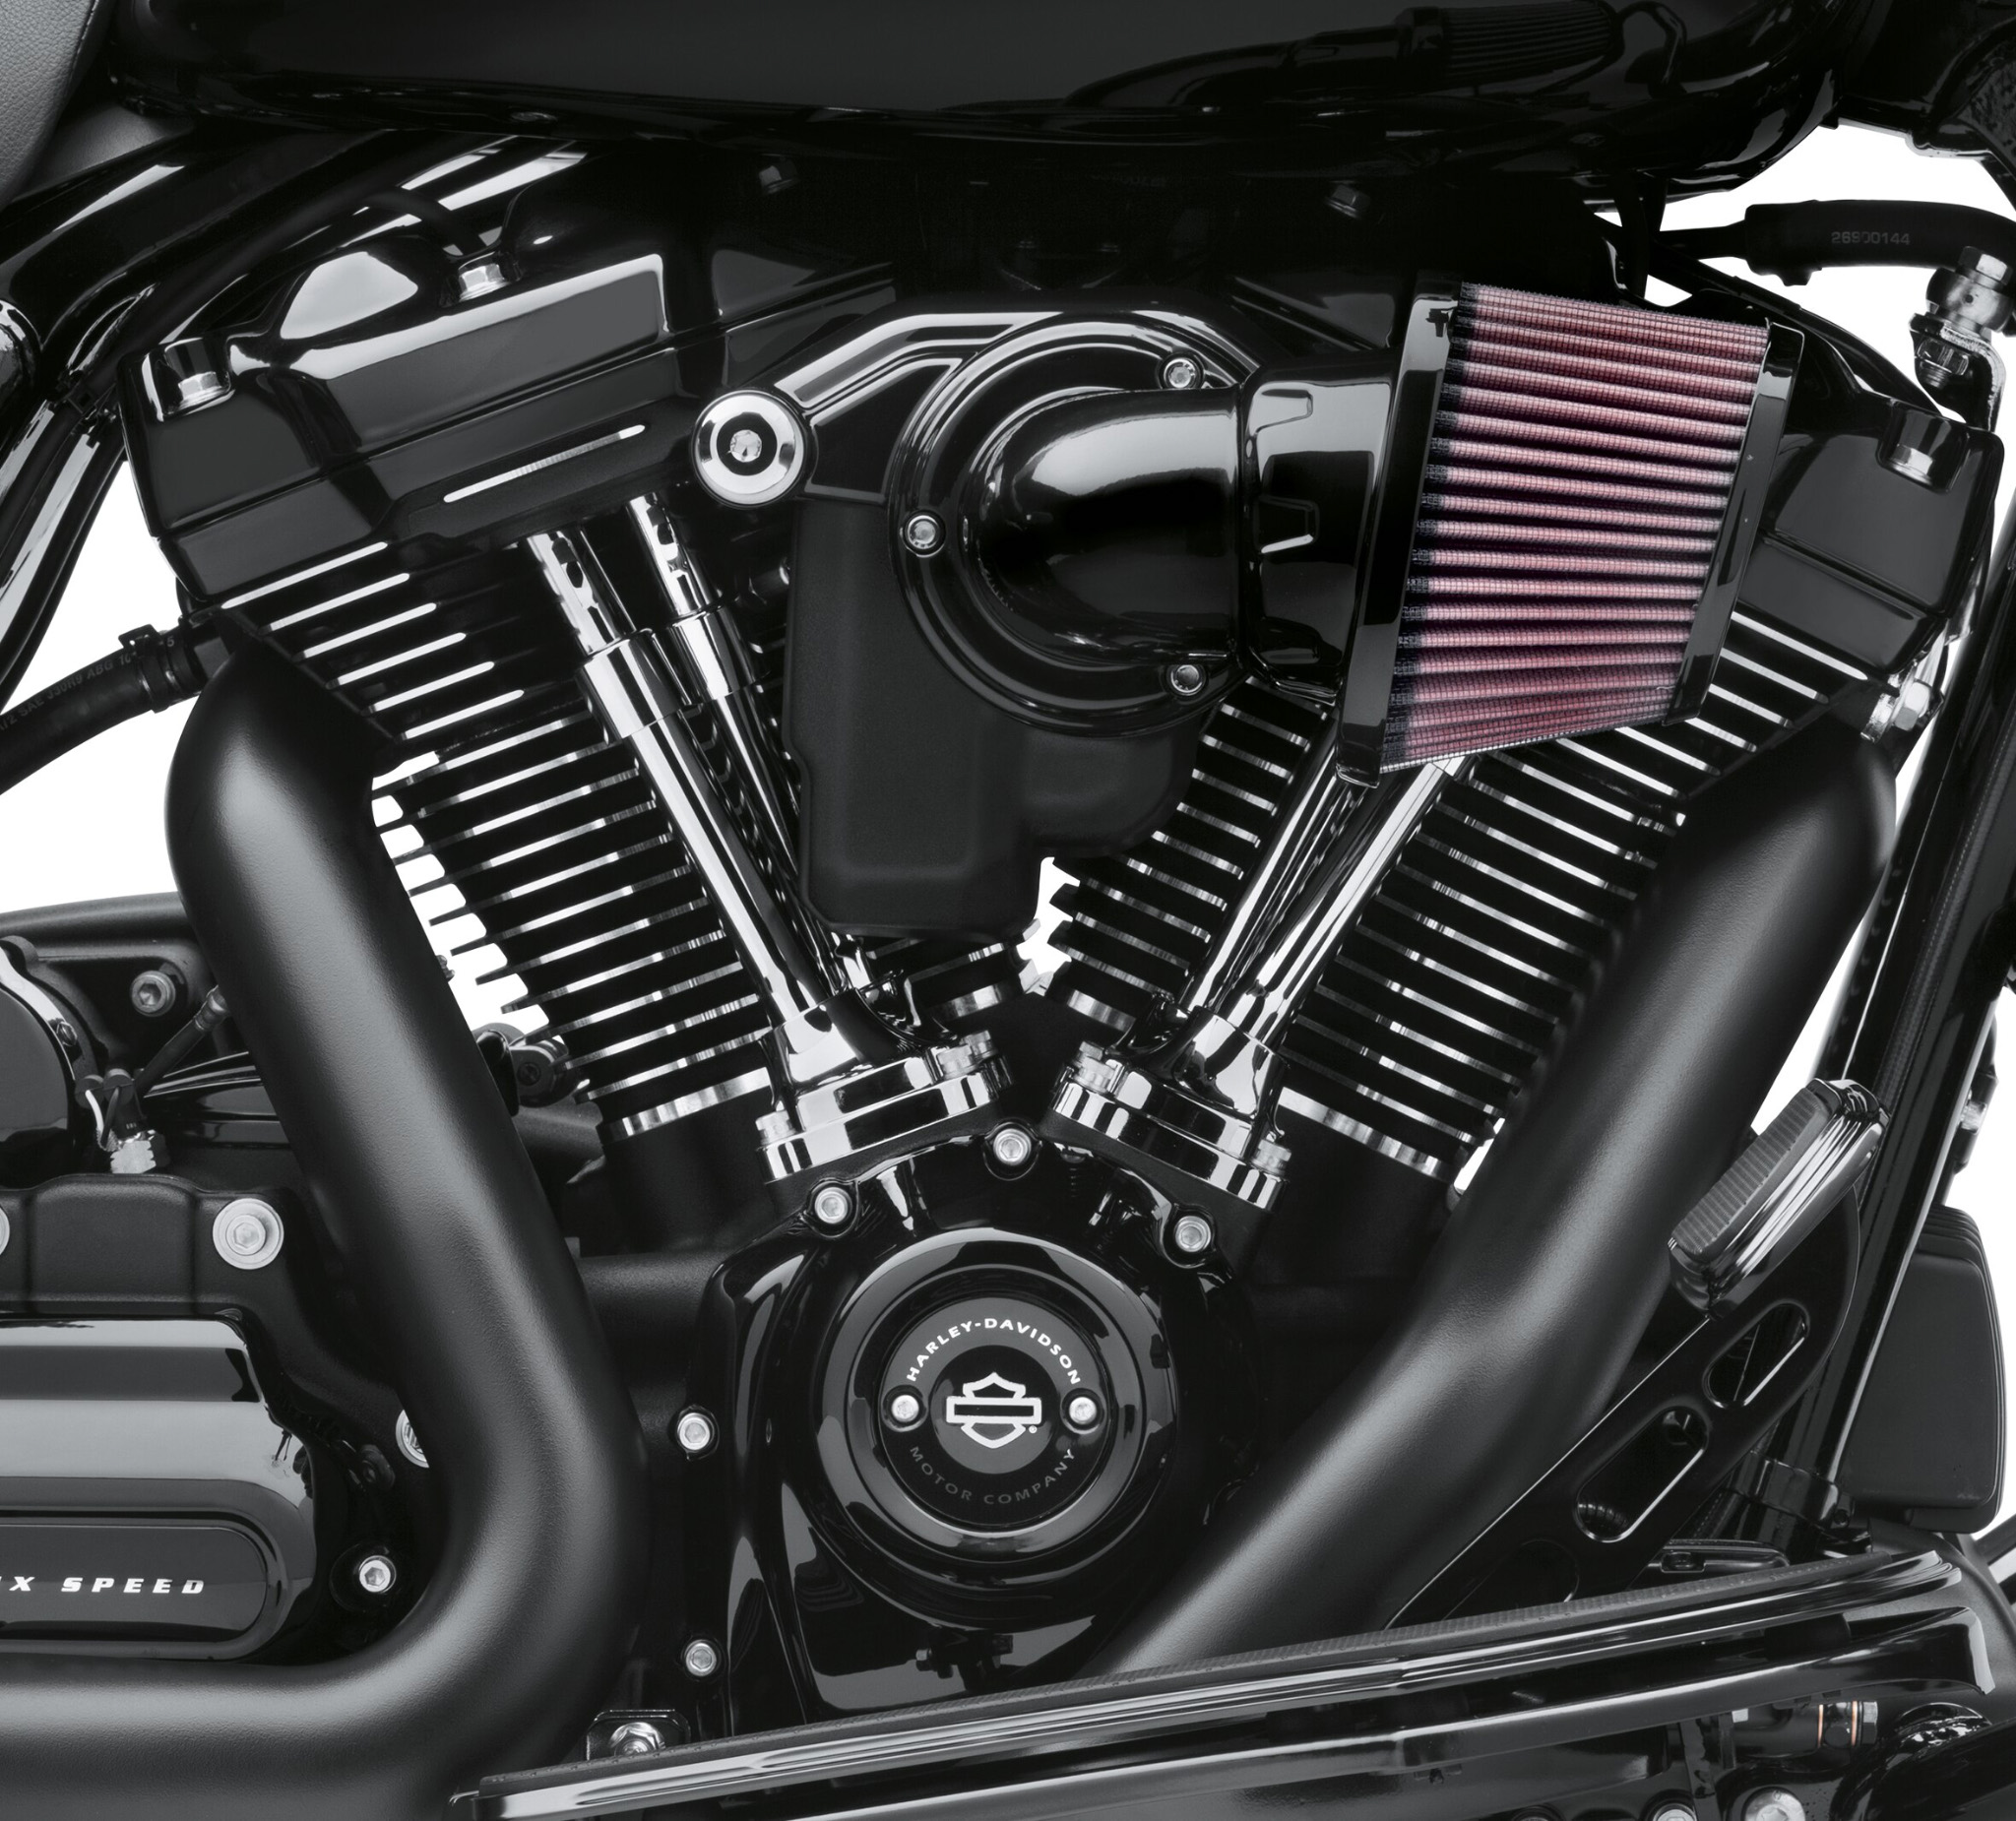 Details about   Transmission Top Cover Gasket fits Harley-Davidson